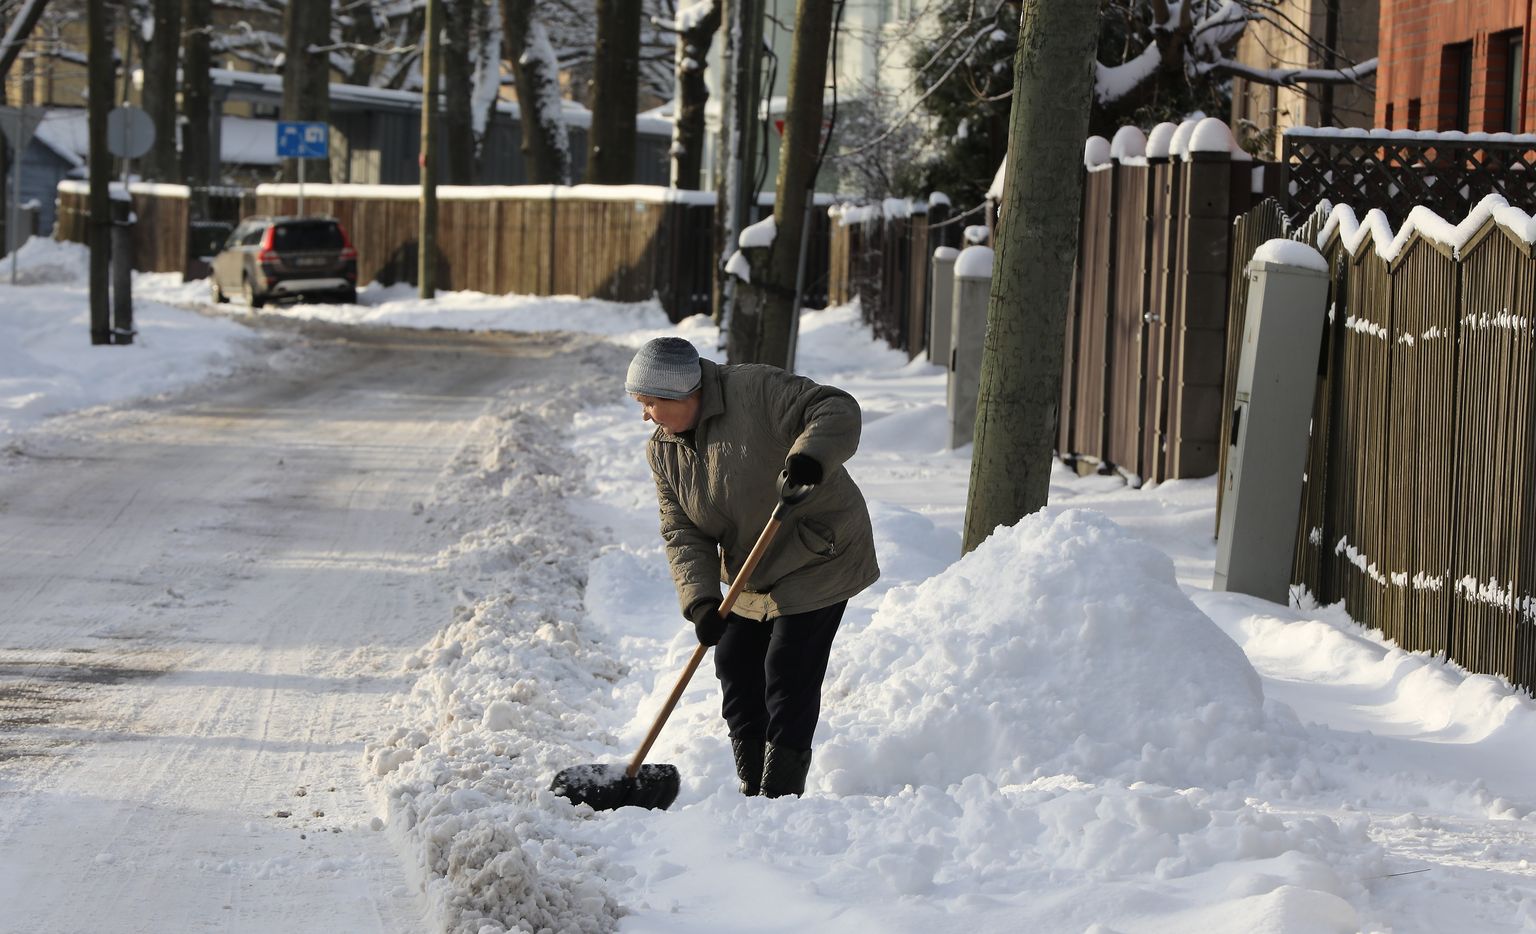 Sieviete tīra sniegu Zalves ielā.